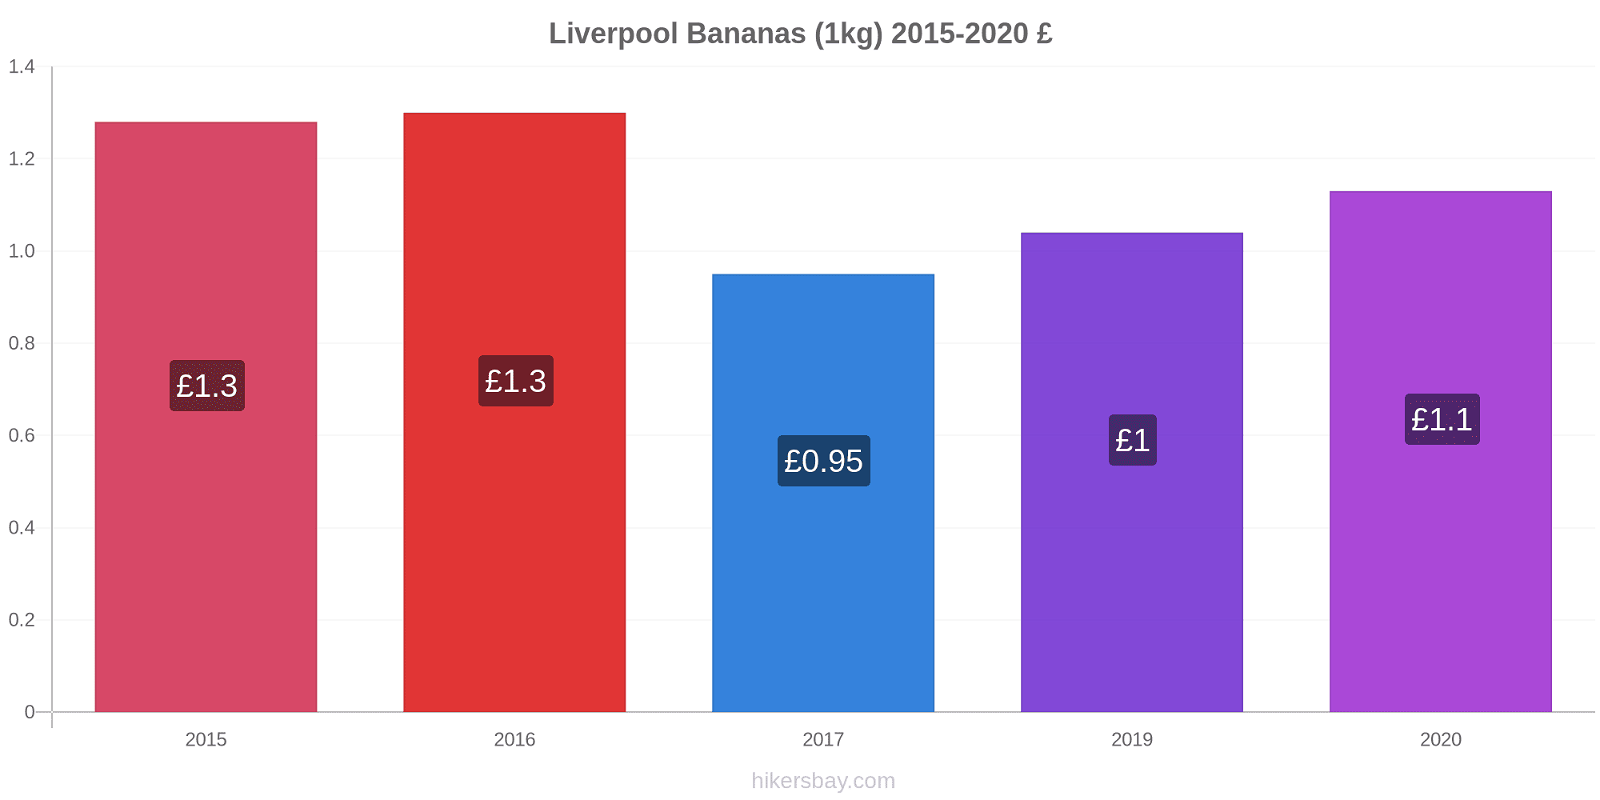 Liverpool variação de preço Banana (1kg) hikersbay.com